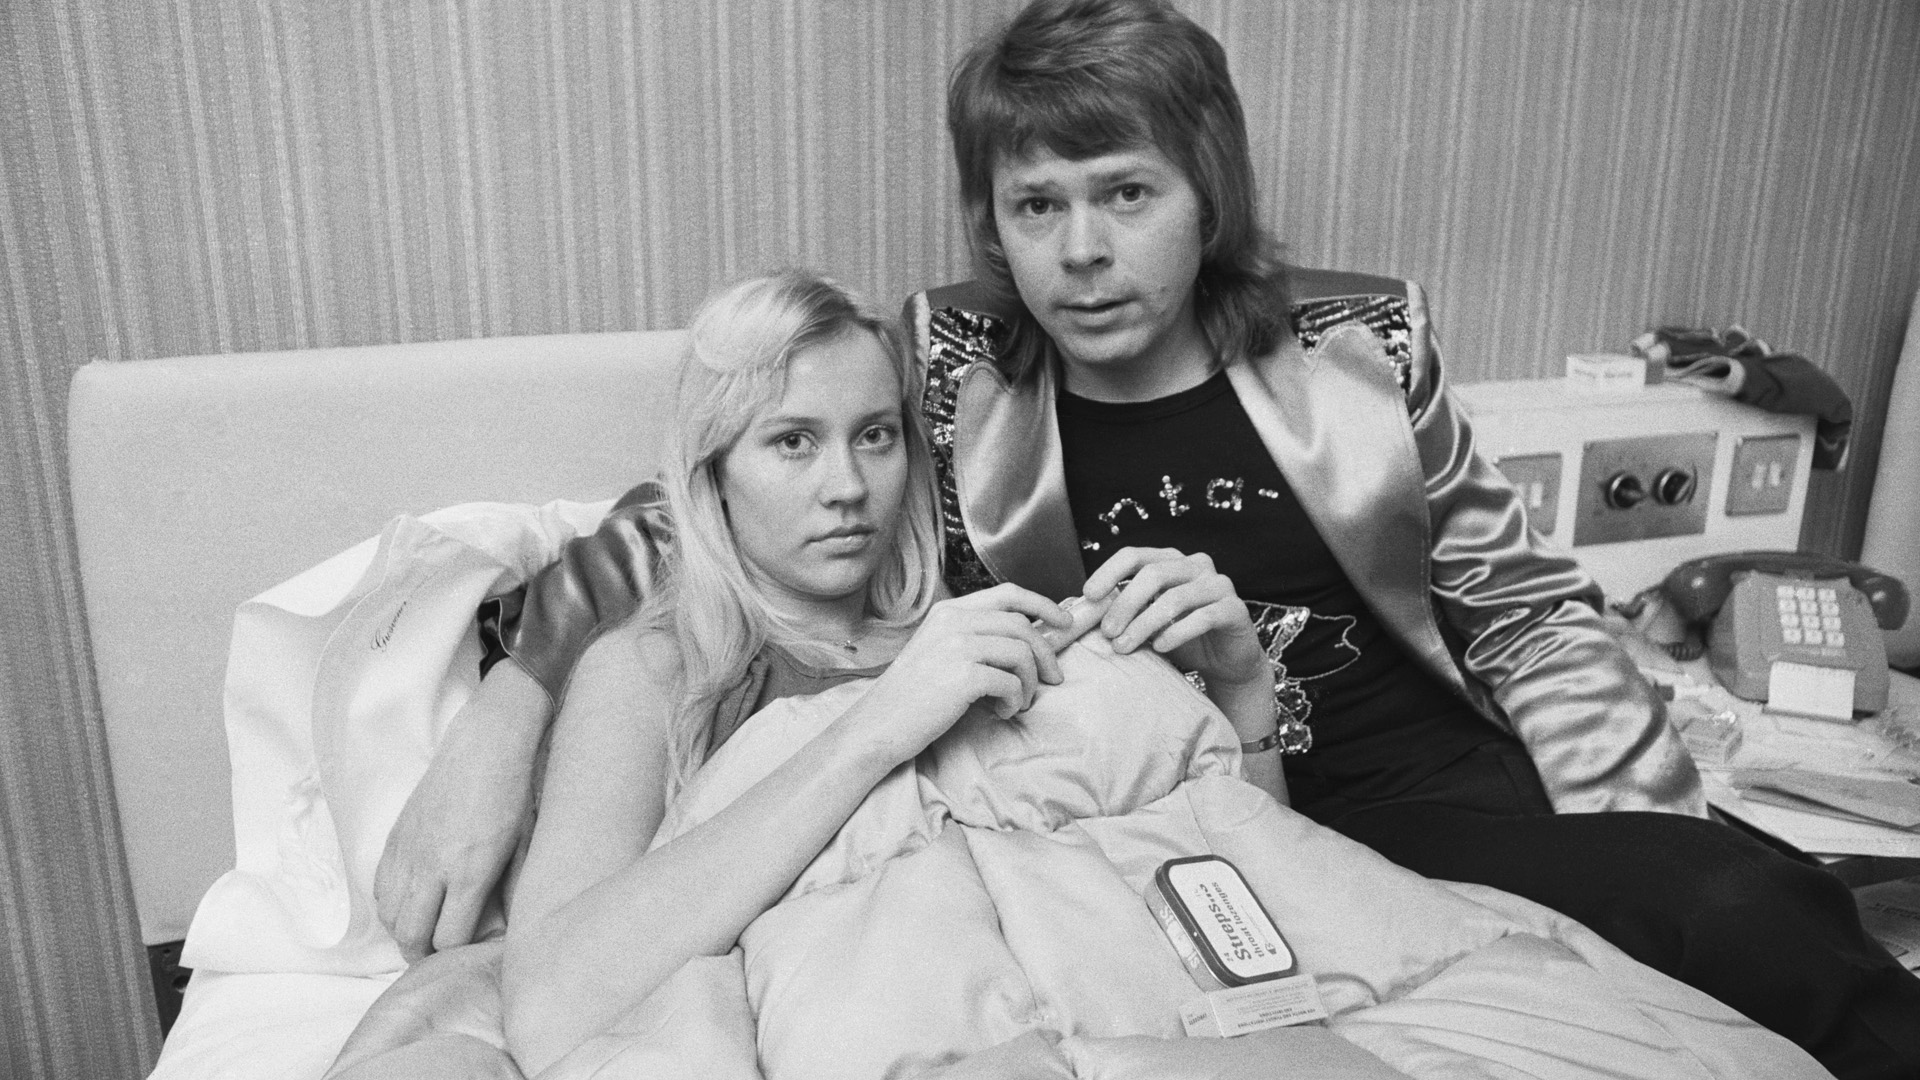 Ha nincs Eurovízió, nem lett volna ABBA sem – Ők voltak a Dalfesztivál 67 évének legérdekesebb szereplői | nlc